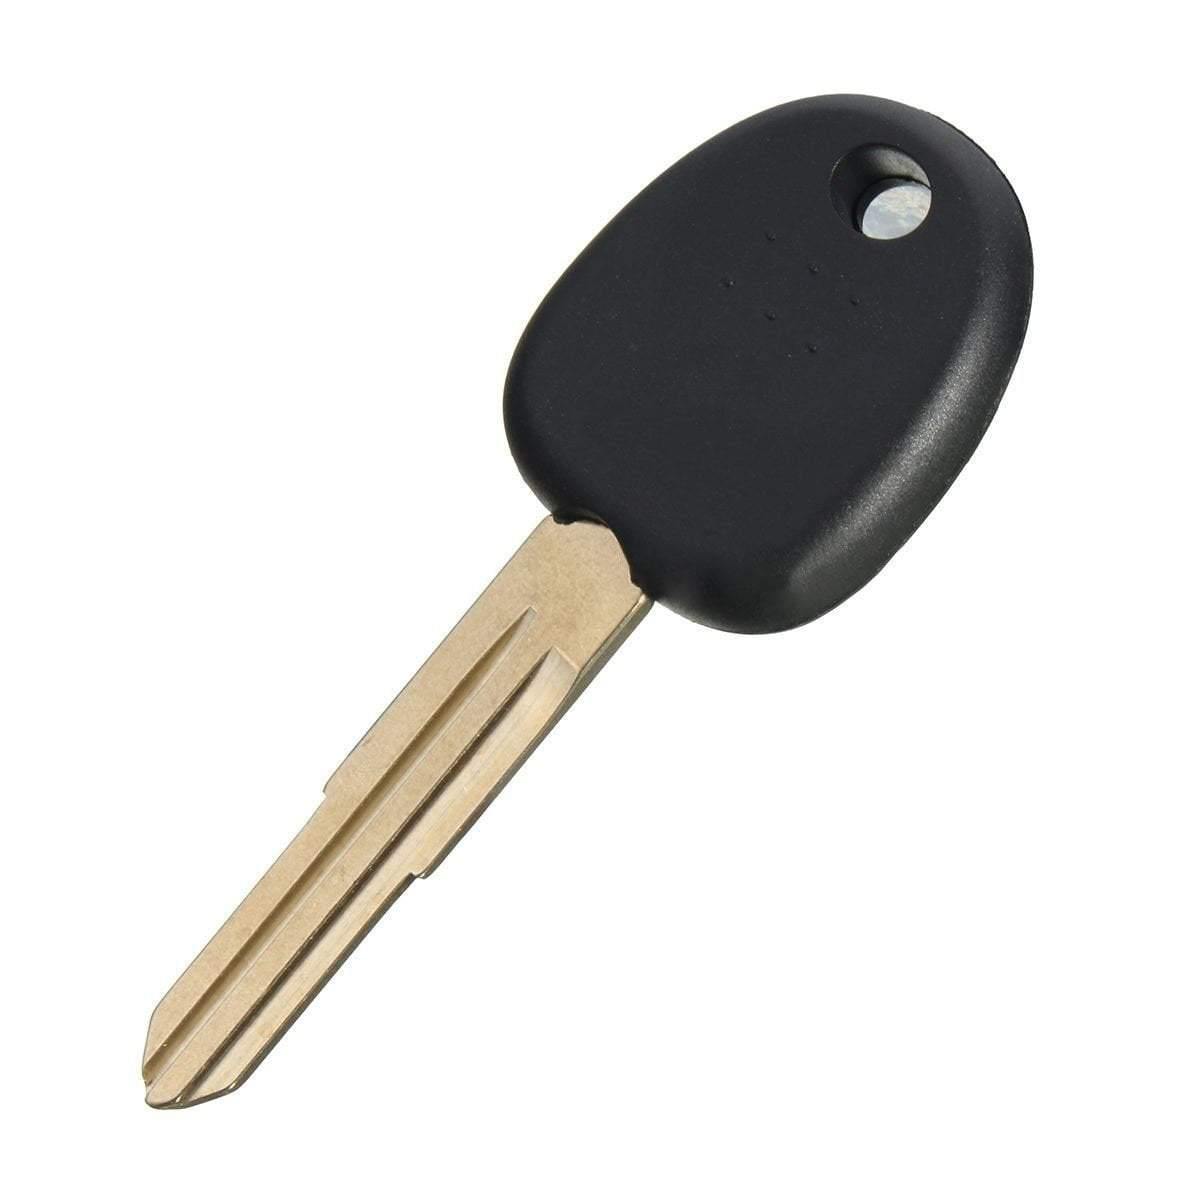 Hyundai kulcs, hyundai sima kulcs, nem gombos hyundai kulcs, kulcs csere, kopott kulcs, autókulcs, olcsó